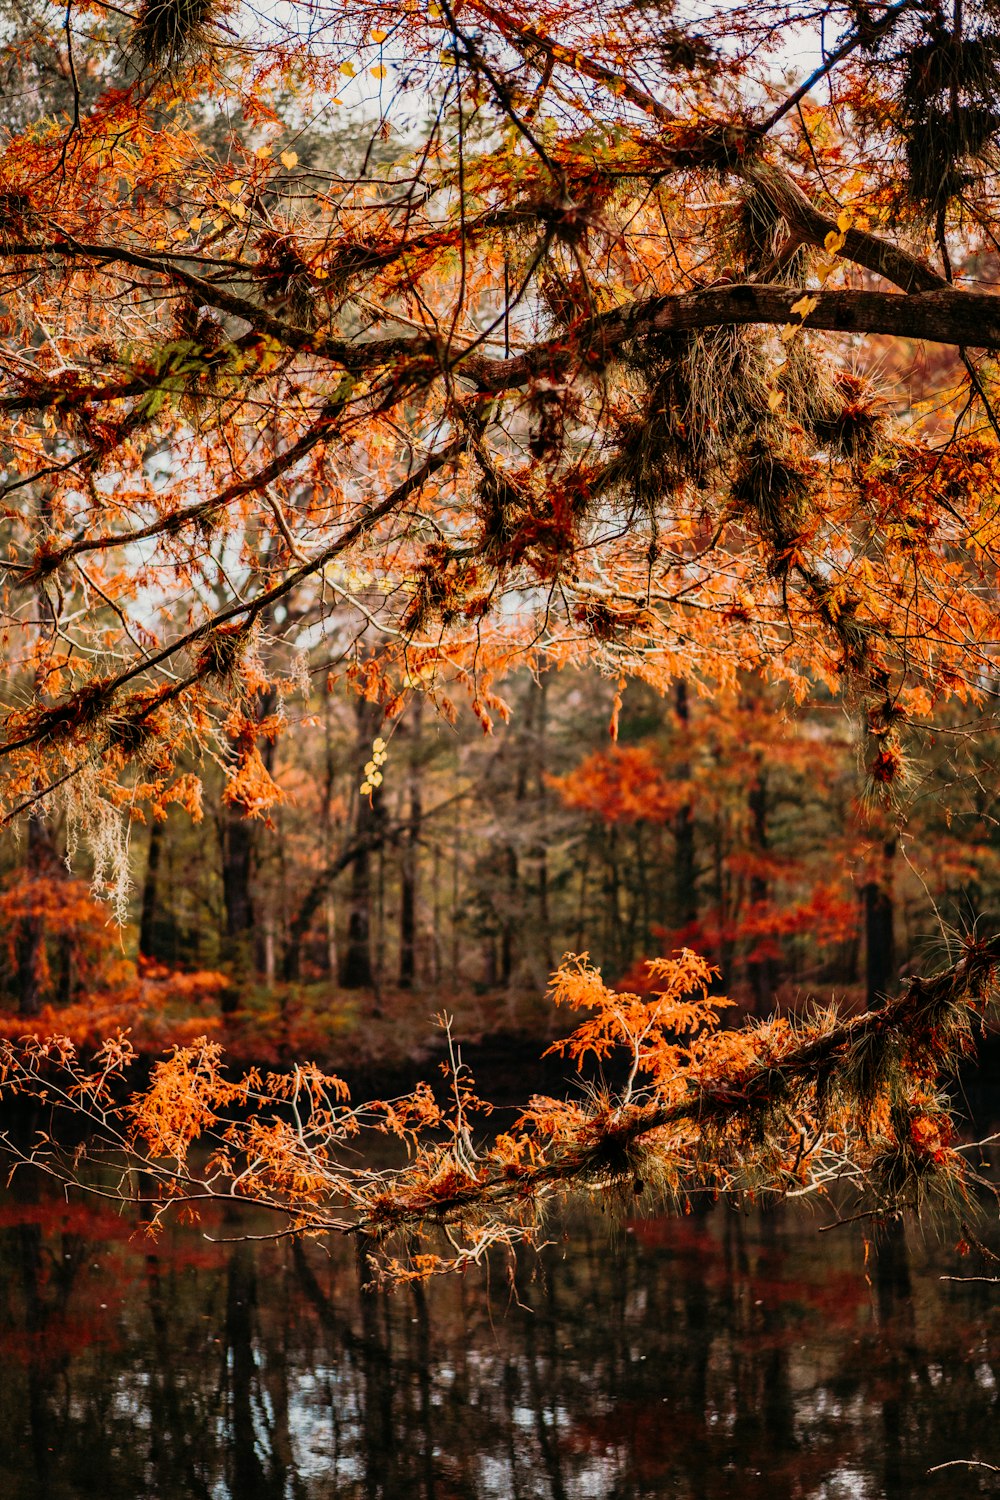 Un estanque rodeado de árboles con hojas de naranja